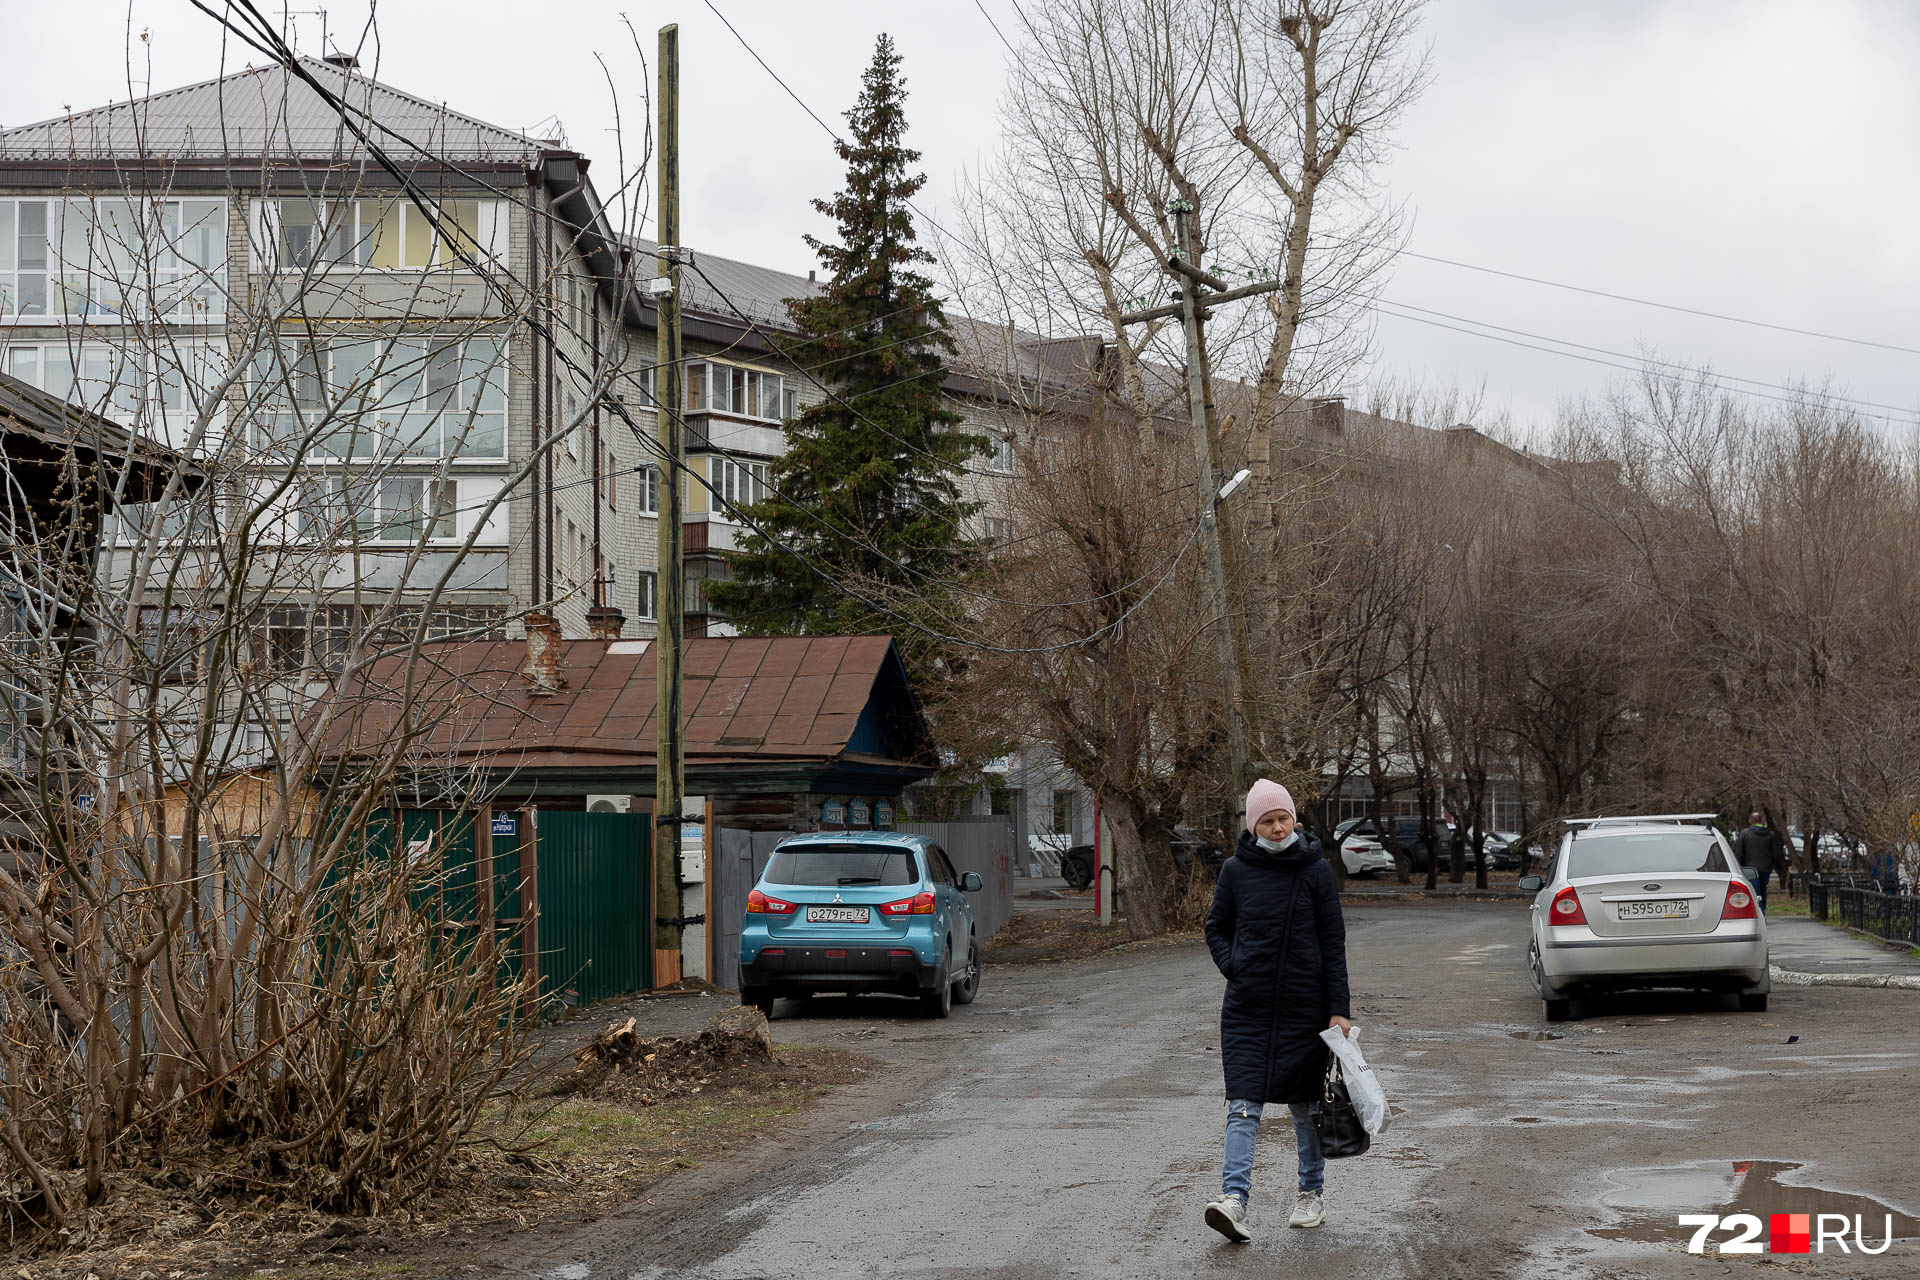 Жители дома на Луначарской, возможно, и не знают, какие споры разгорелись прямо у них под носом